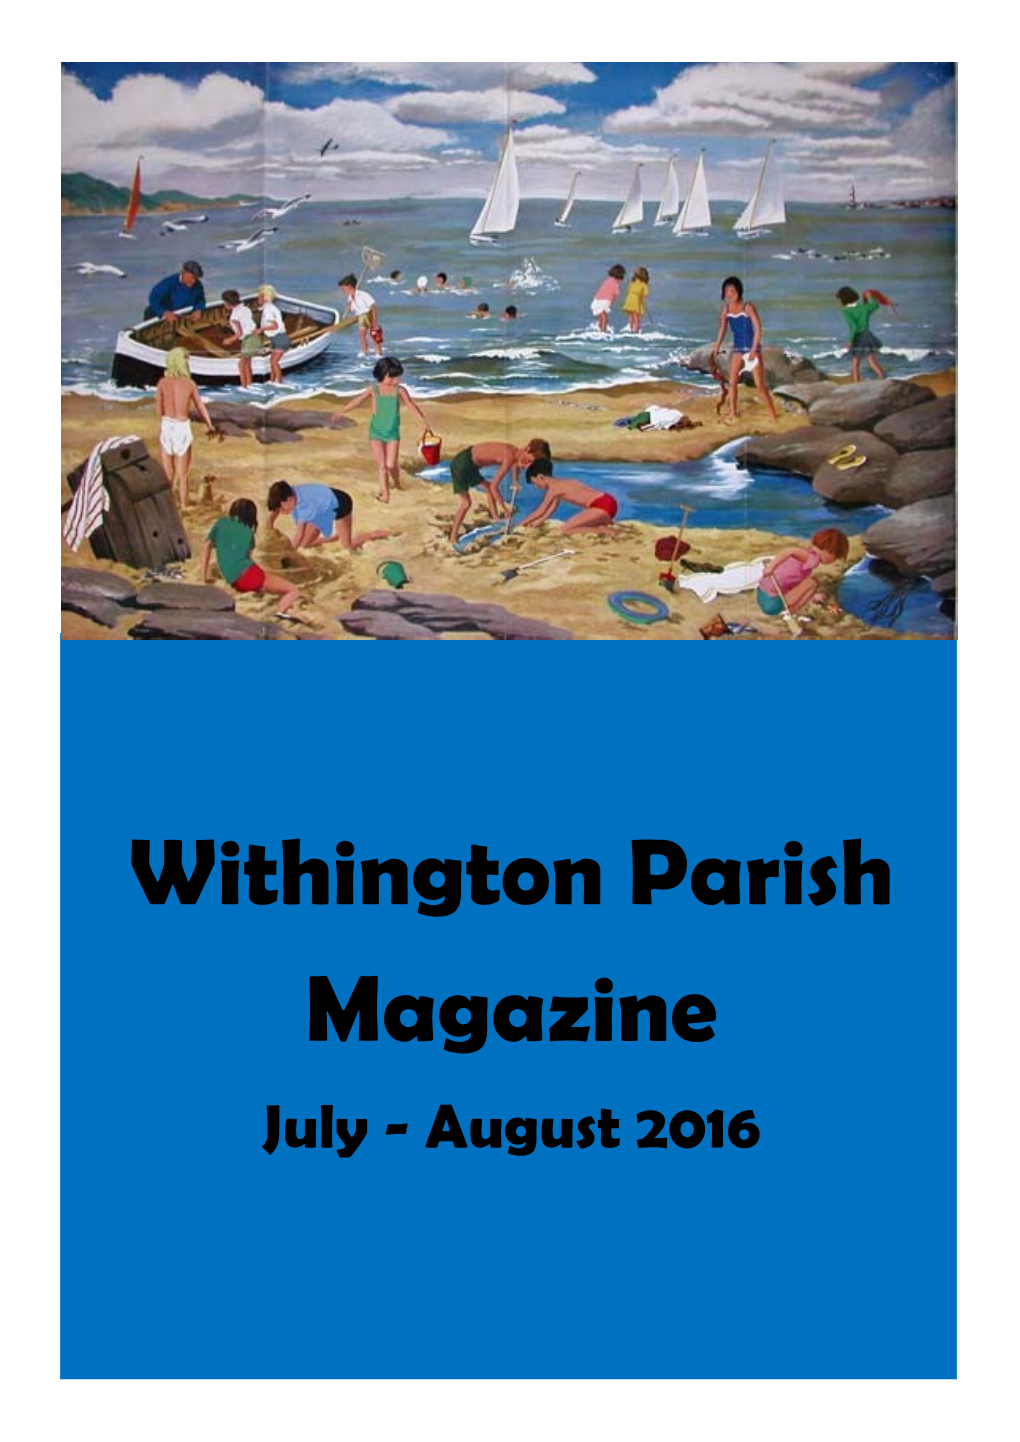 Withington Parish Magazine July - August 2016